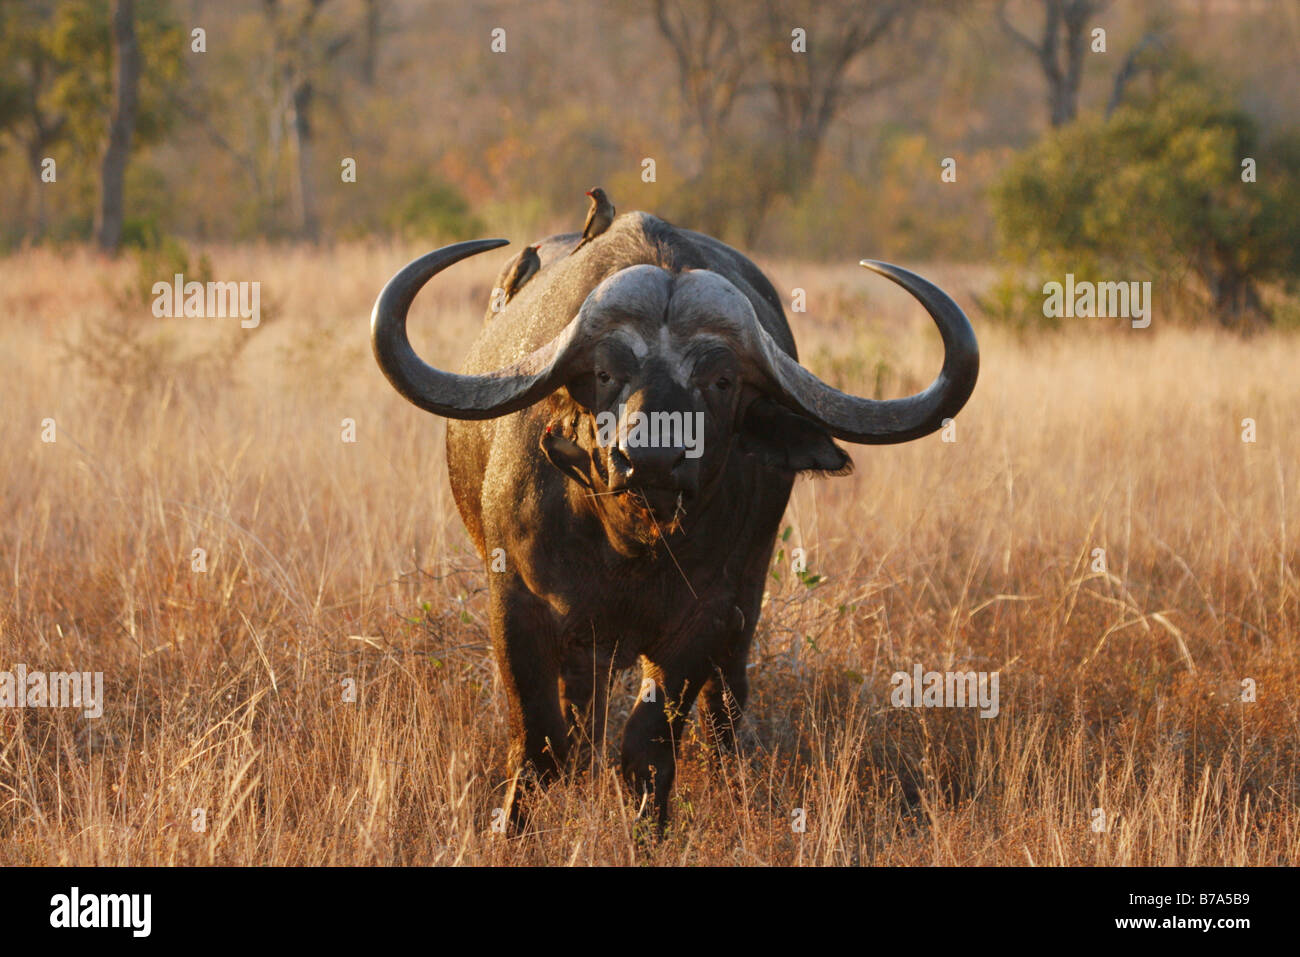 Retrato de un hombre con cuernos de búfalo africano impresionante Foto de stock